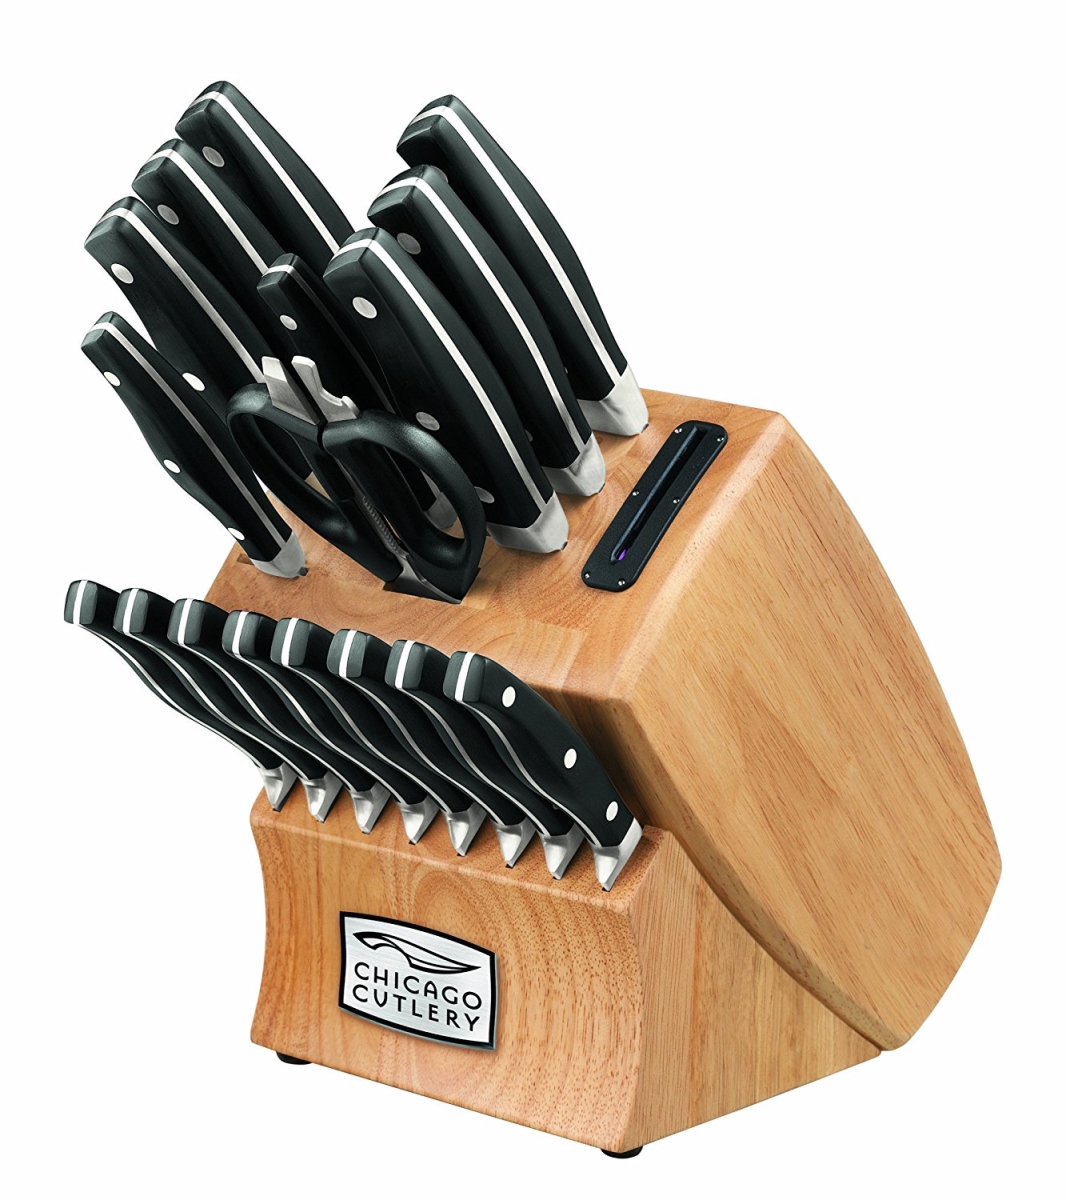 World Kitchen-chicago Cutlery 1117756 Knife Block Set With Block Knife Sharpener - 18 Piece